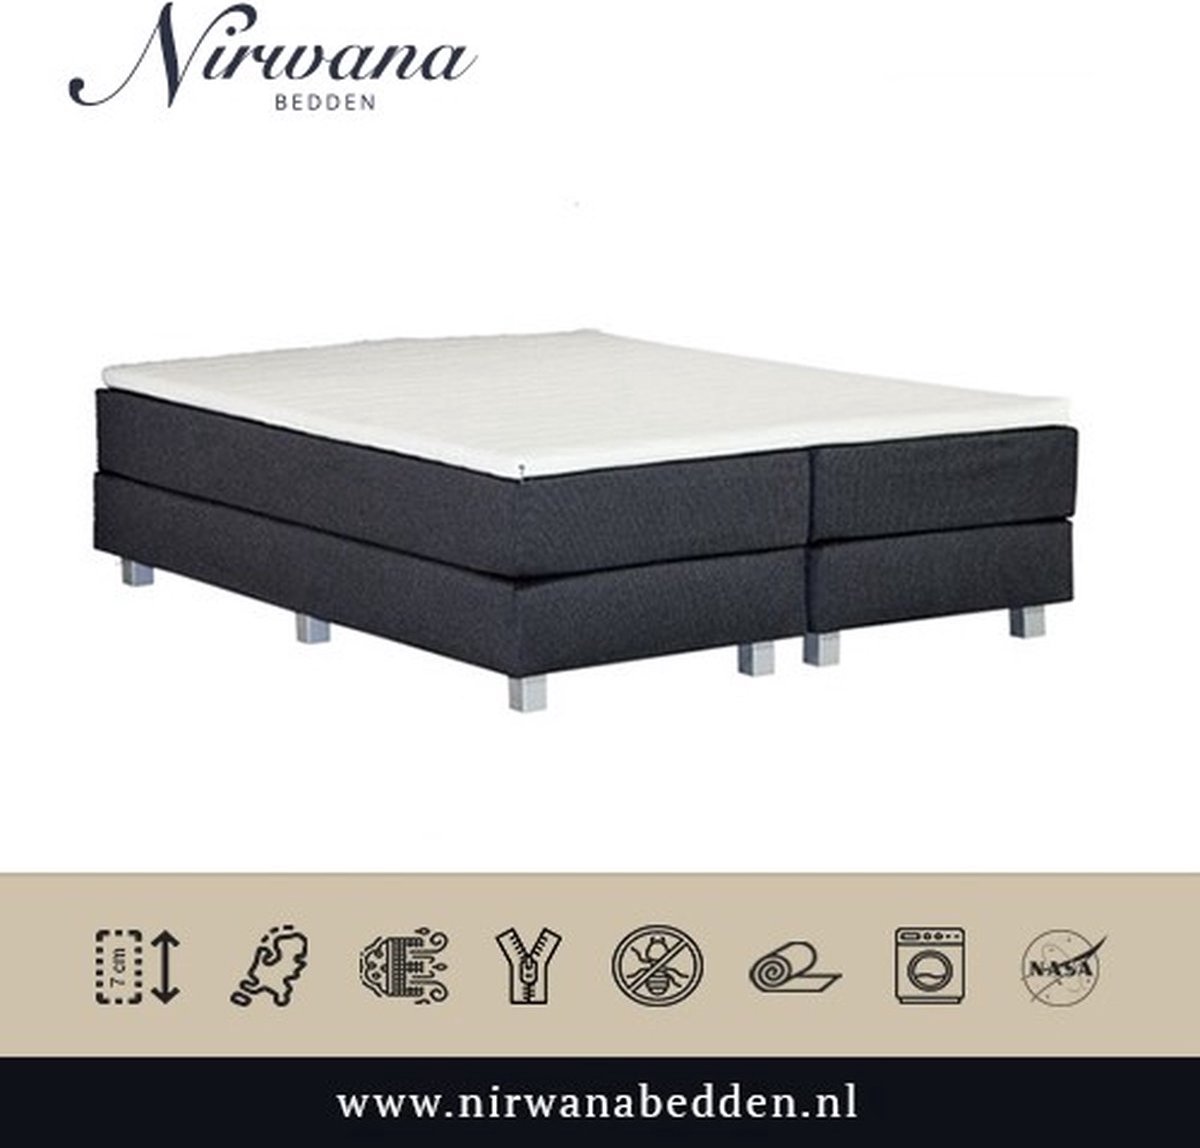 Nirwana Bedden - Topdekmatras - 100x220 - Koudschuim HR - 7CM